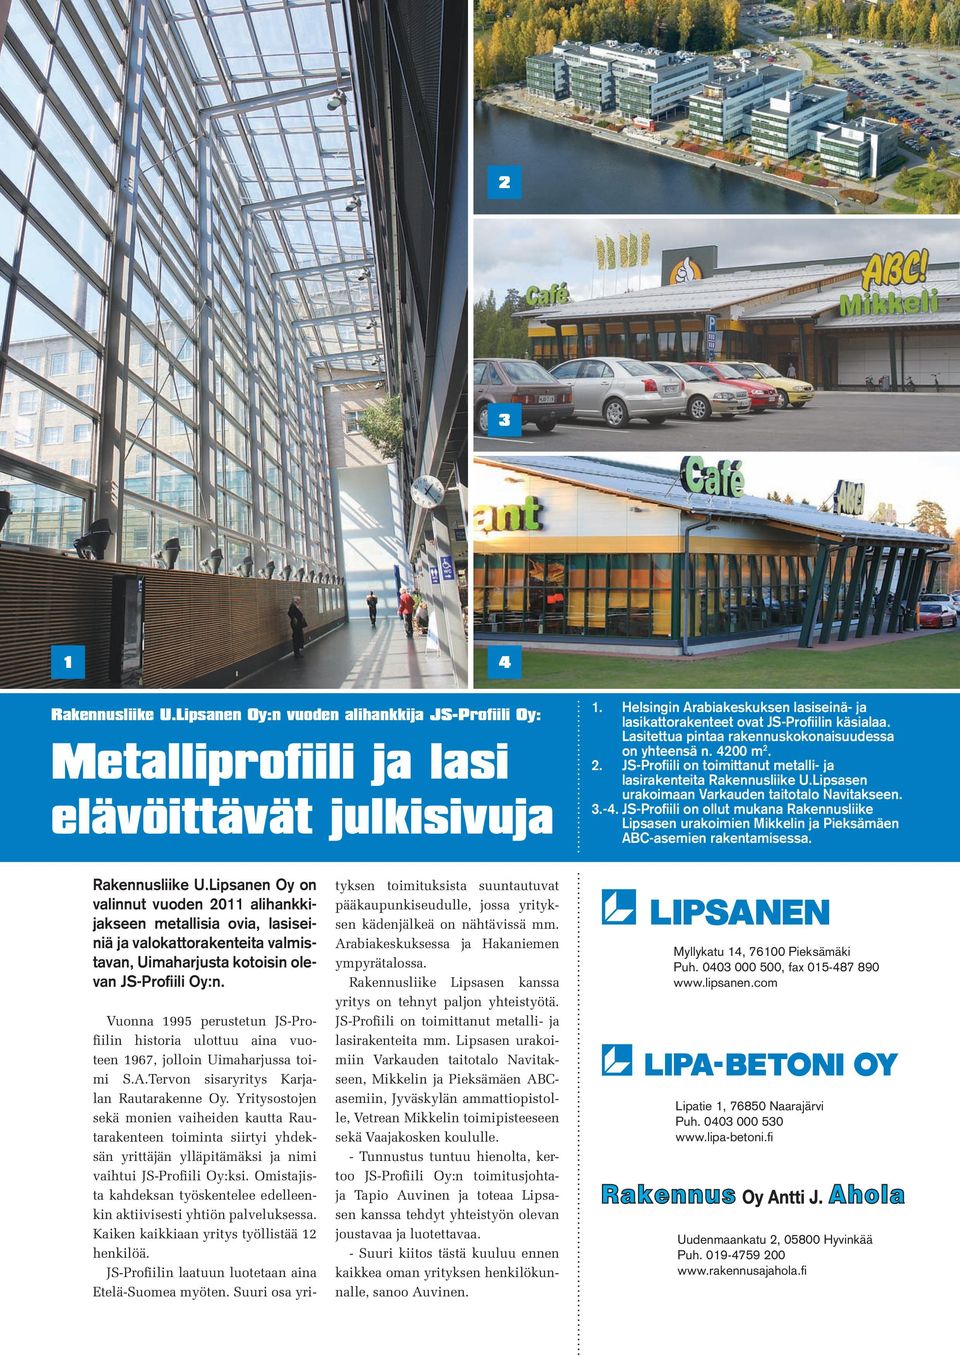 2. JS-Profiili on toimittanut metalli- ja lasirakenteita Rakennusliike U.Lipsasen urakoimaan Varkauden taitotalo Navitakseen. 3.-4.